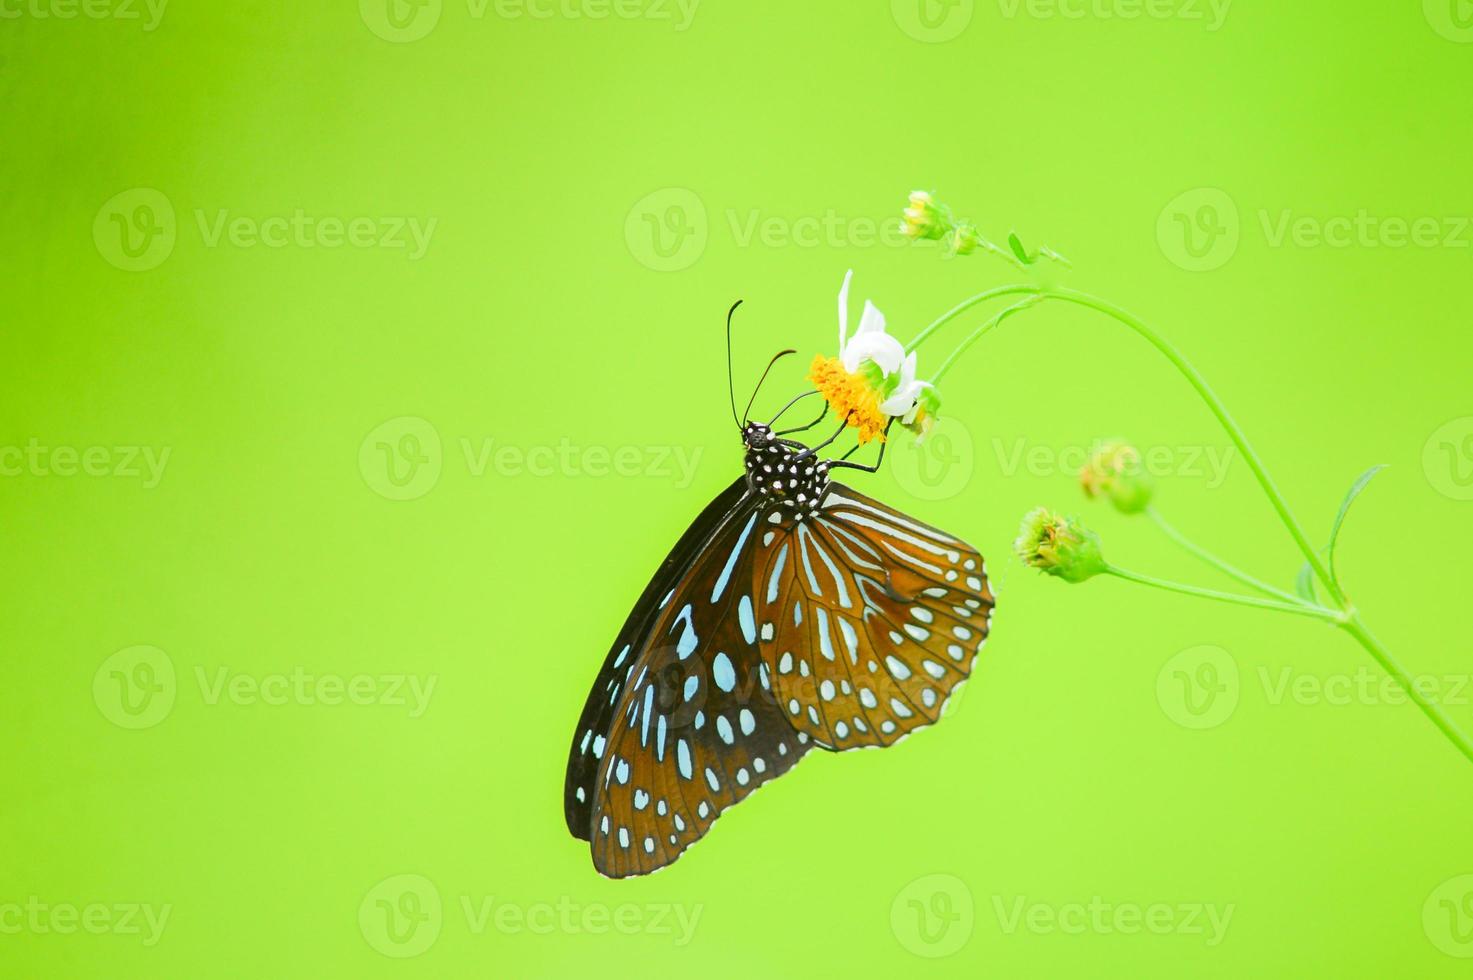 mooie vlinders in de natuur zijn op zoek naar nectar van bloemen in de thaise regio van thailand. foto